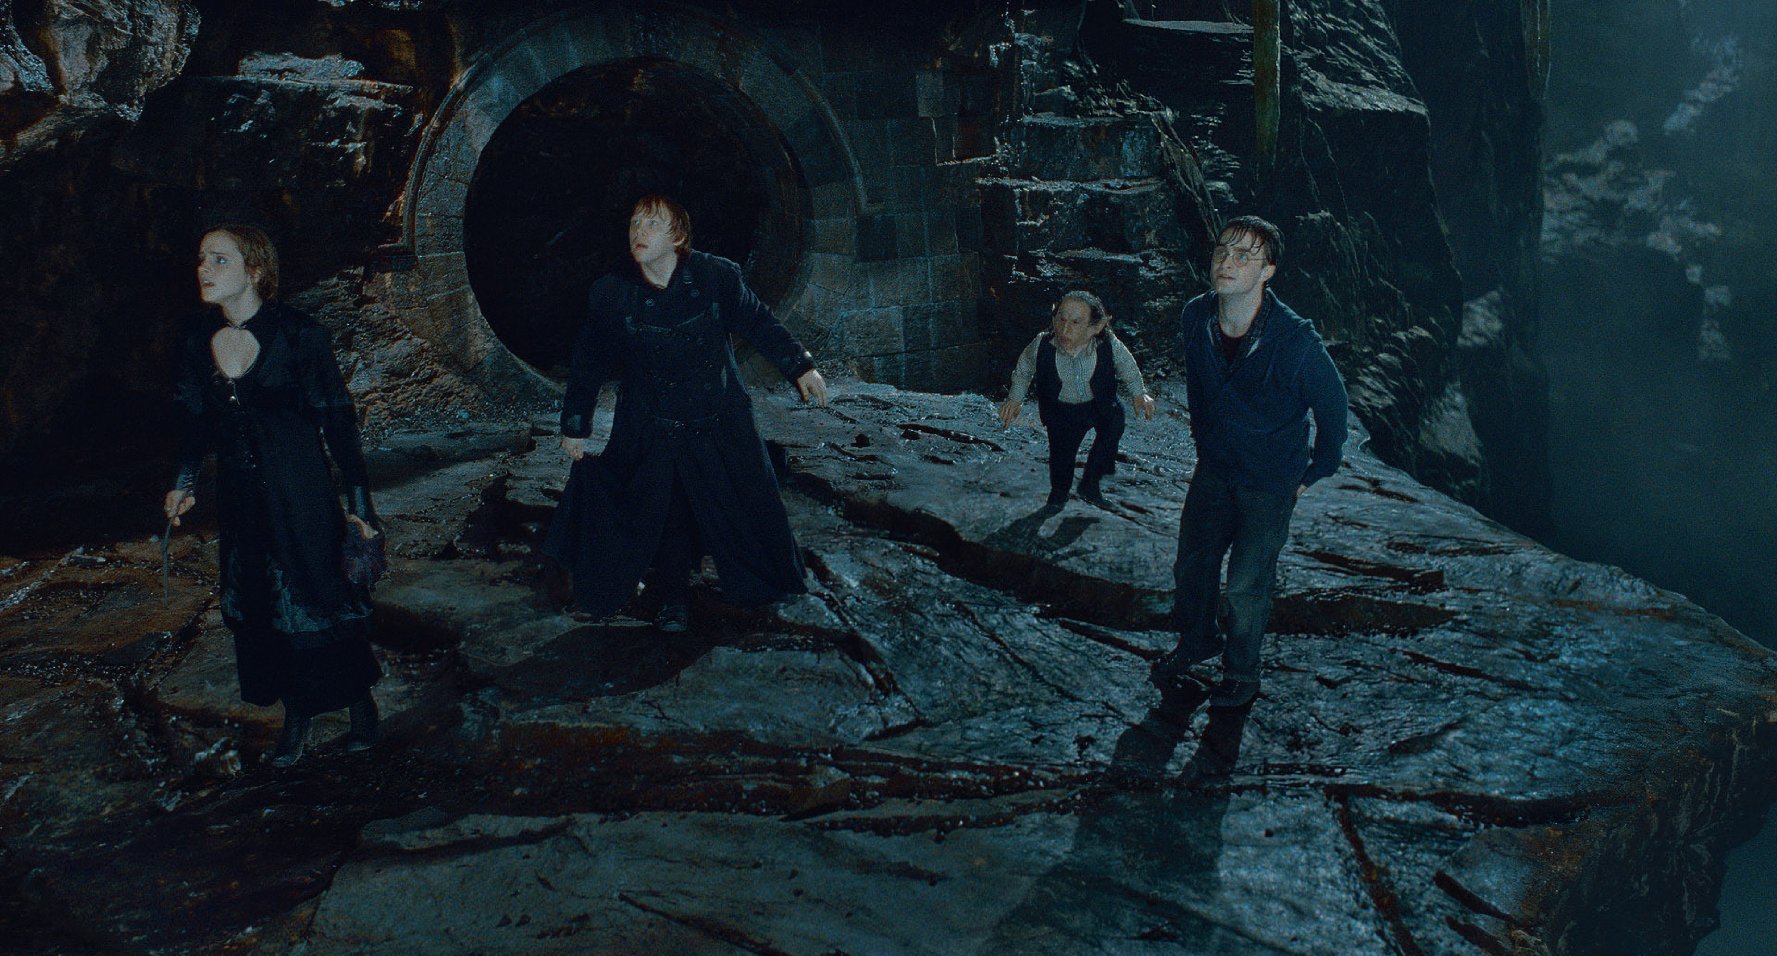  Harry Potter Et Les Reliques De La Mort - Partie 2 de David Yates - 2011 / Fantastique 